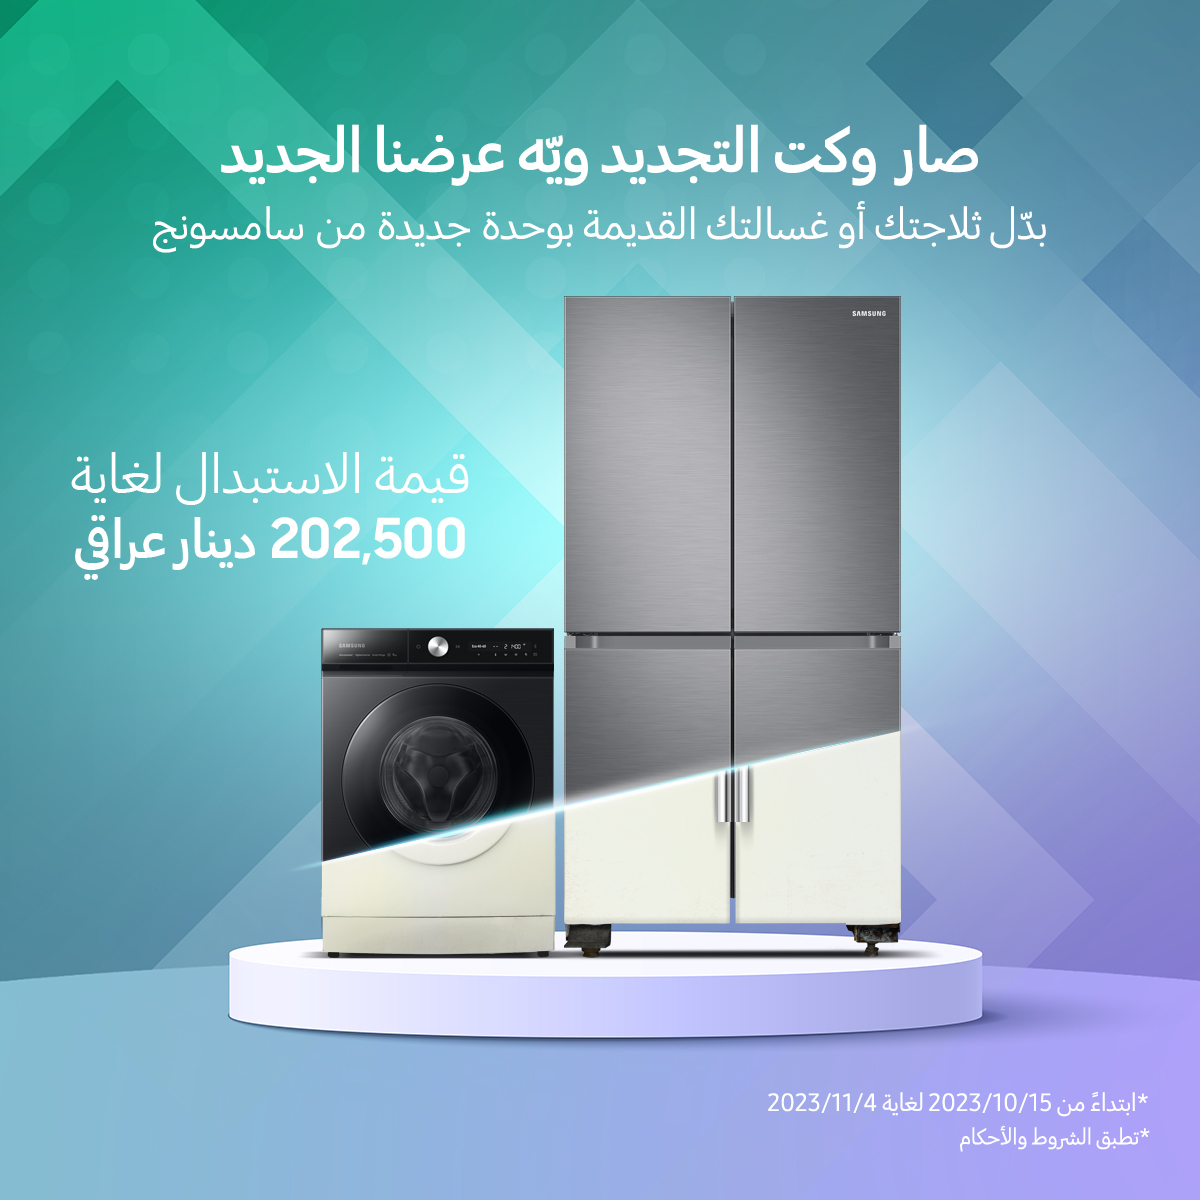 سامسونج إلكترونيكس المشرق العربي تطلق حملة استبدال الأجهزة الكهربائية القديمة بأخرى جديدة من “سامسونج”